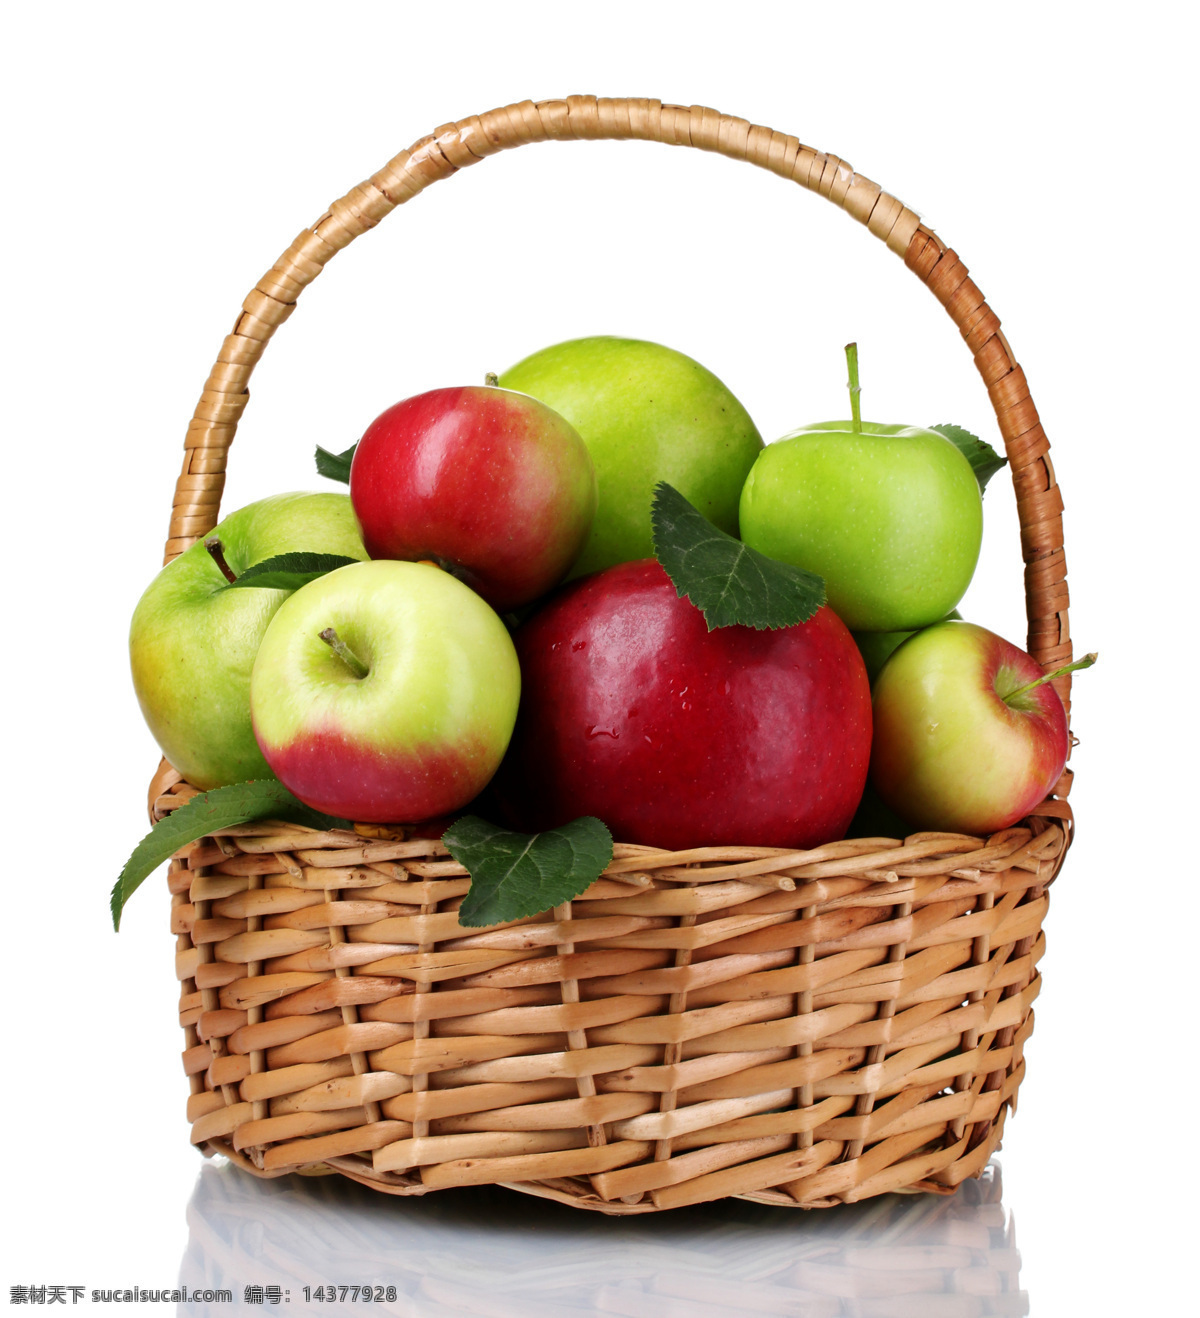 竹篮 里 苹果 新鲜水果 果篮 篮子 苹果图片 餐饮美食